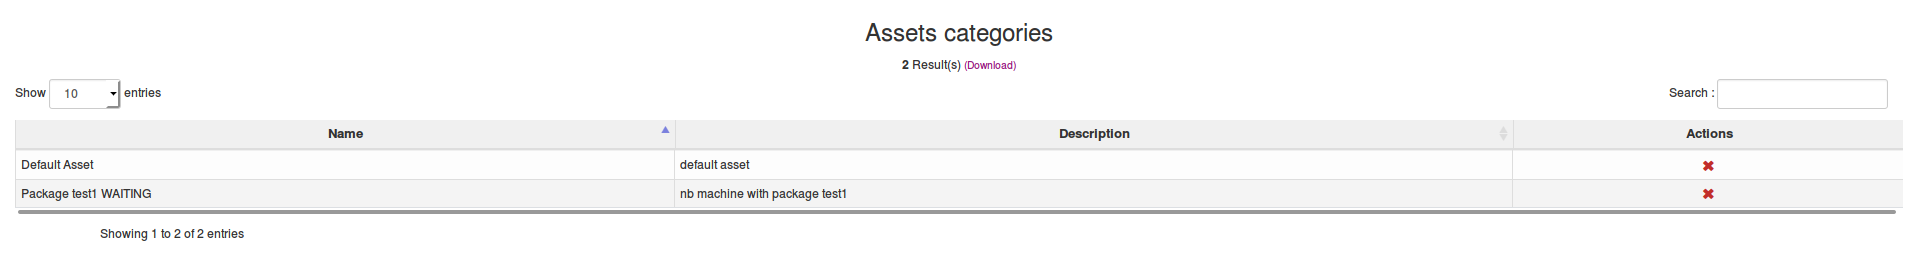 Assets categories